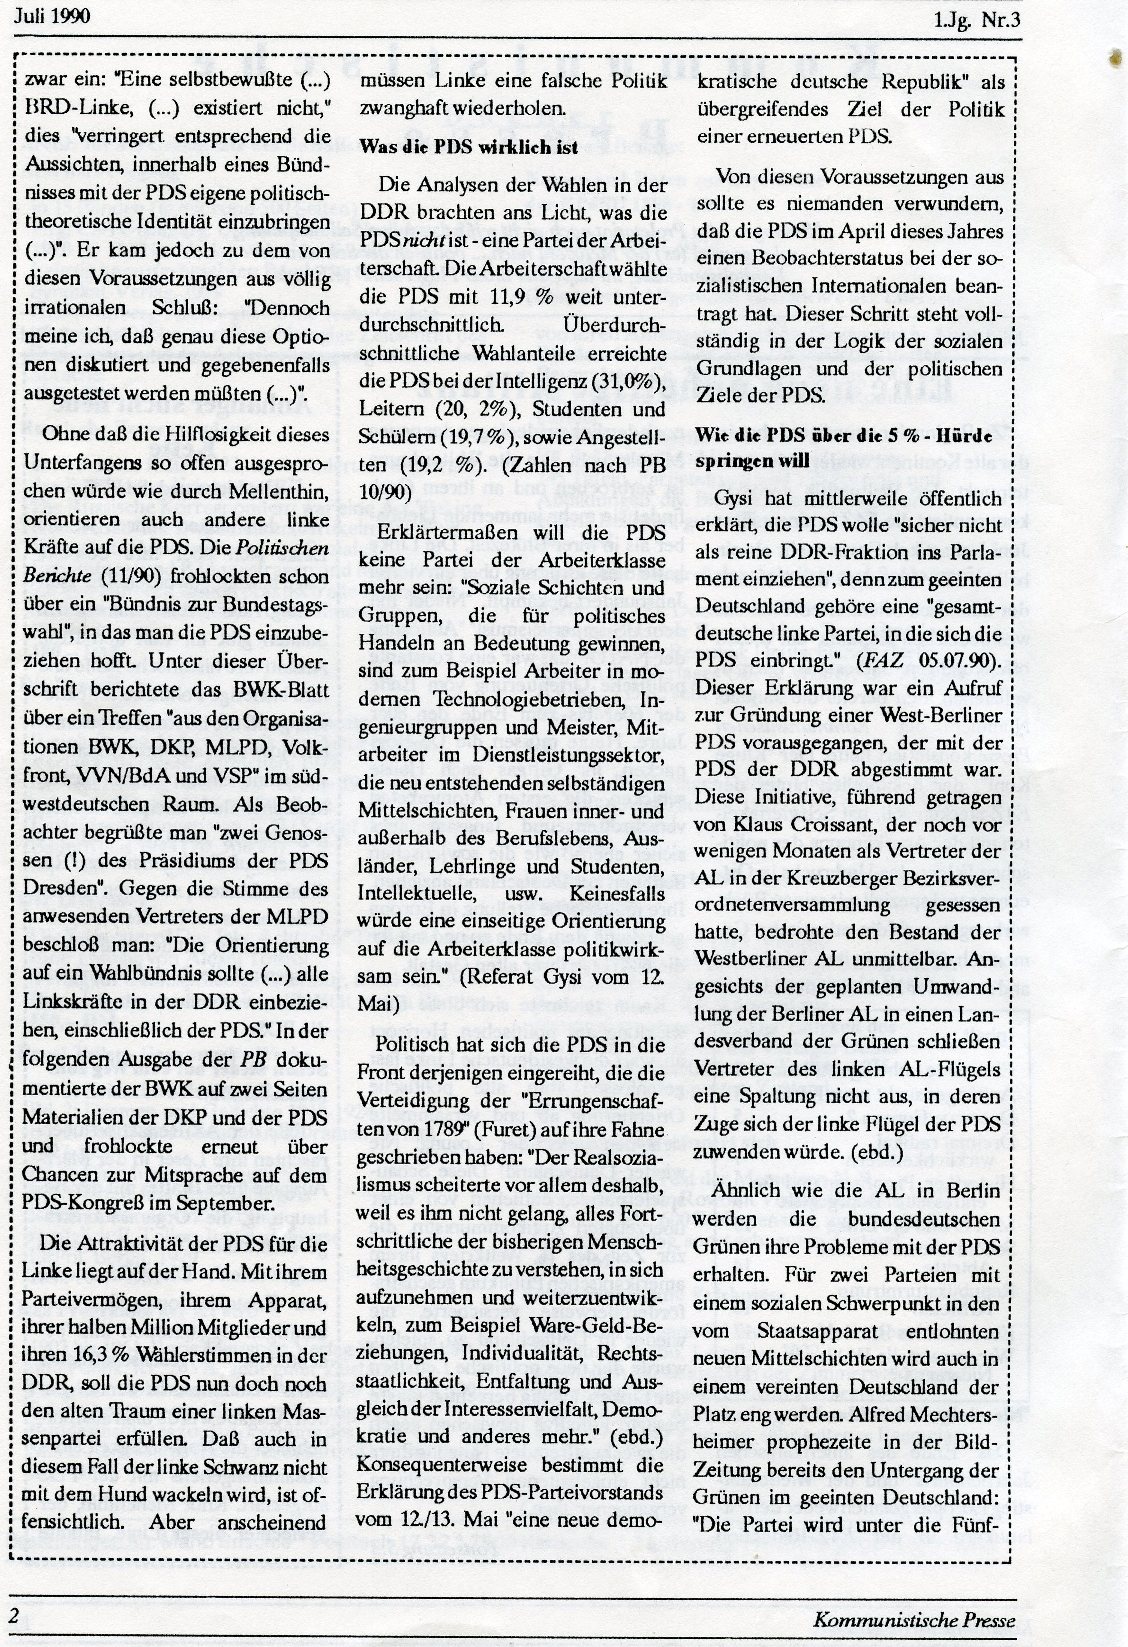 Gelsenkirchen_Kommunistische_Presse_1990_03_002